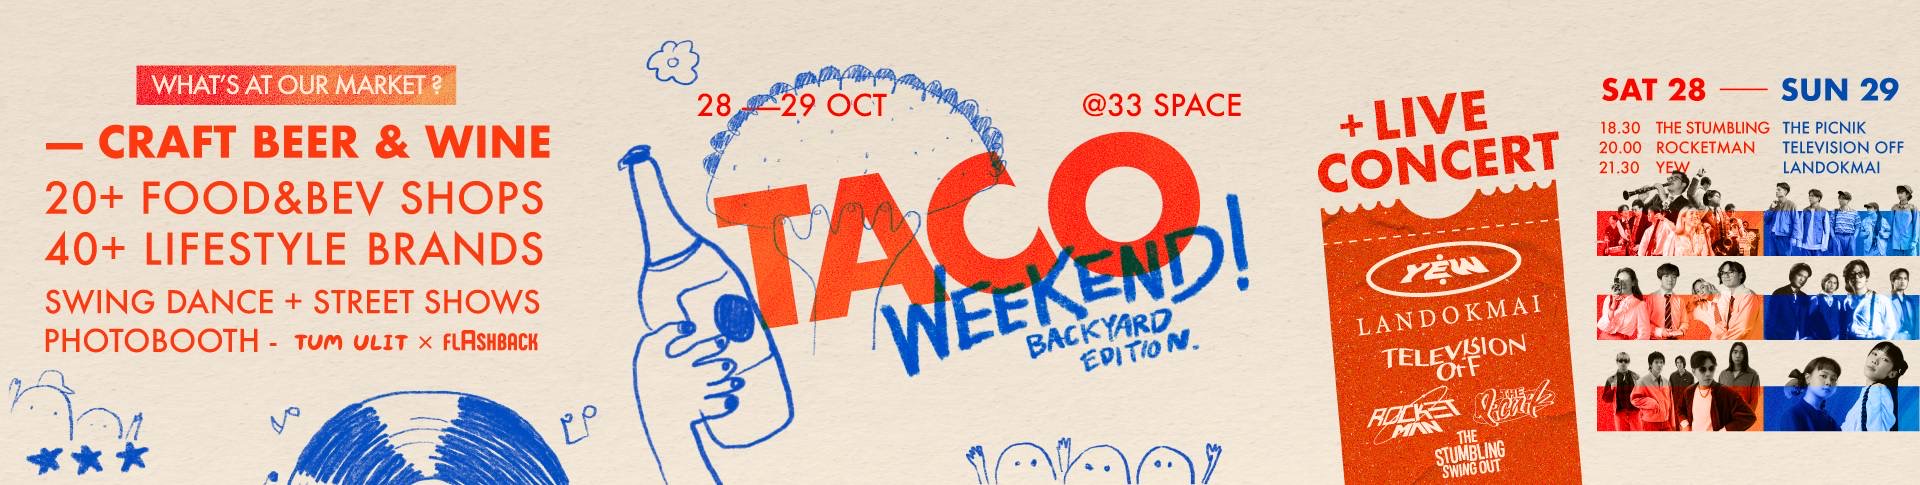 Taco Weekend Backyard Edition